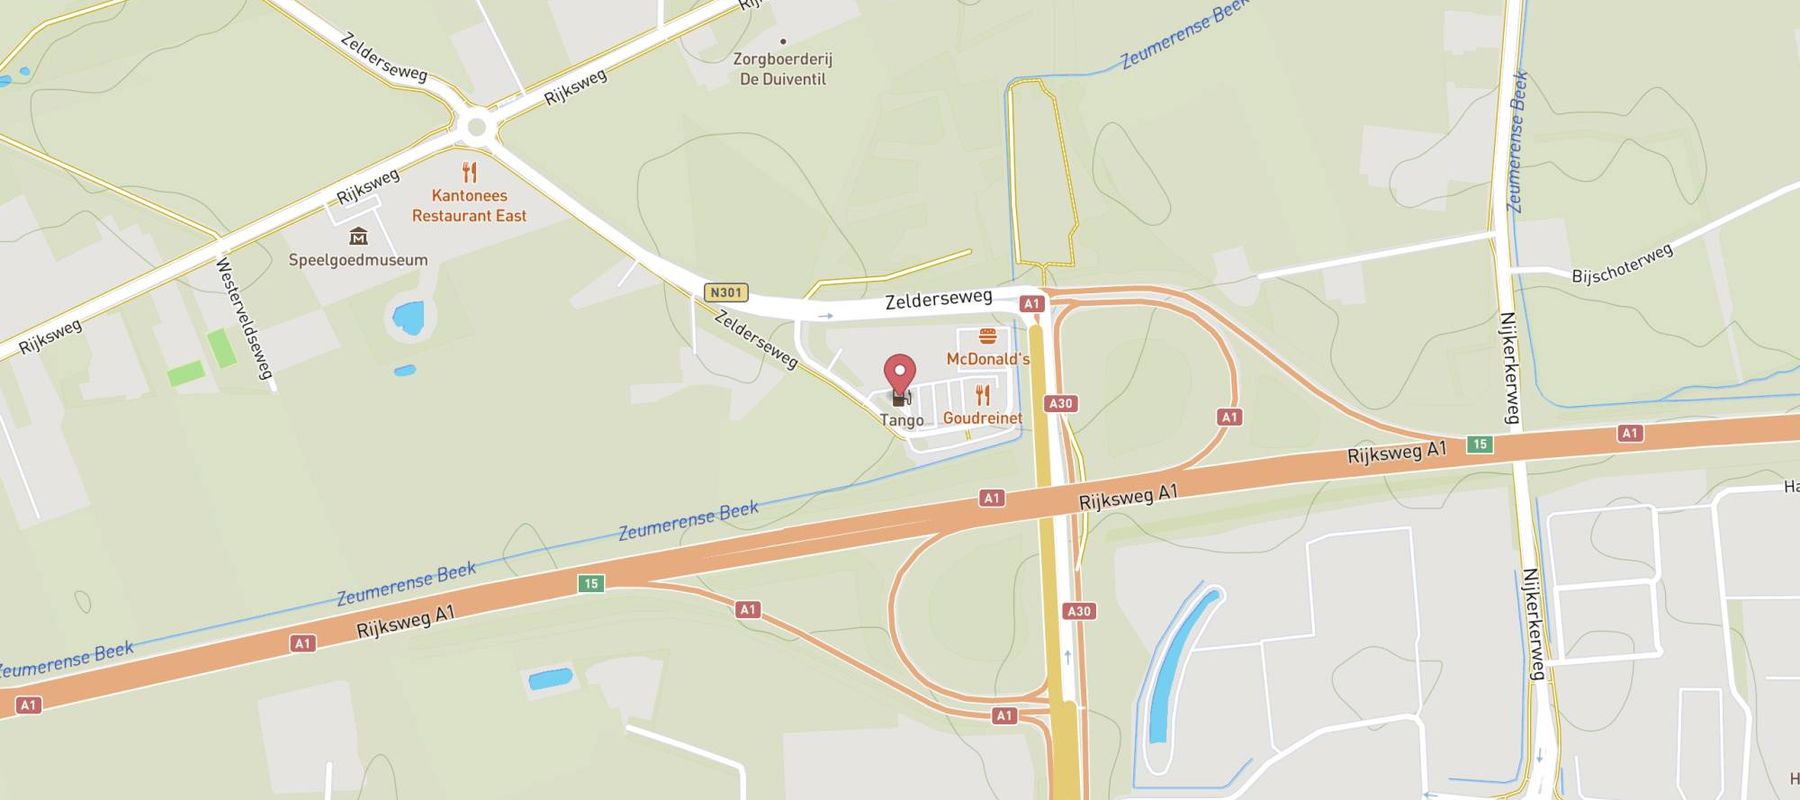 Tango Barneveld Zelderseweg map